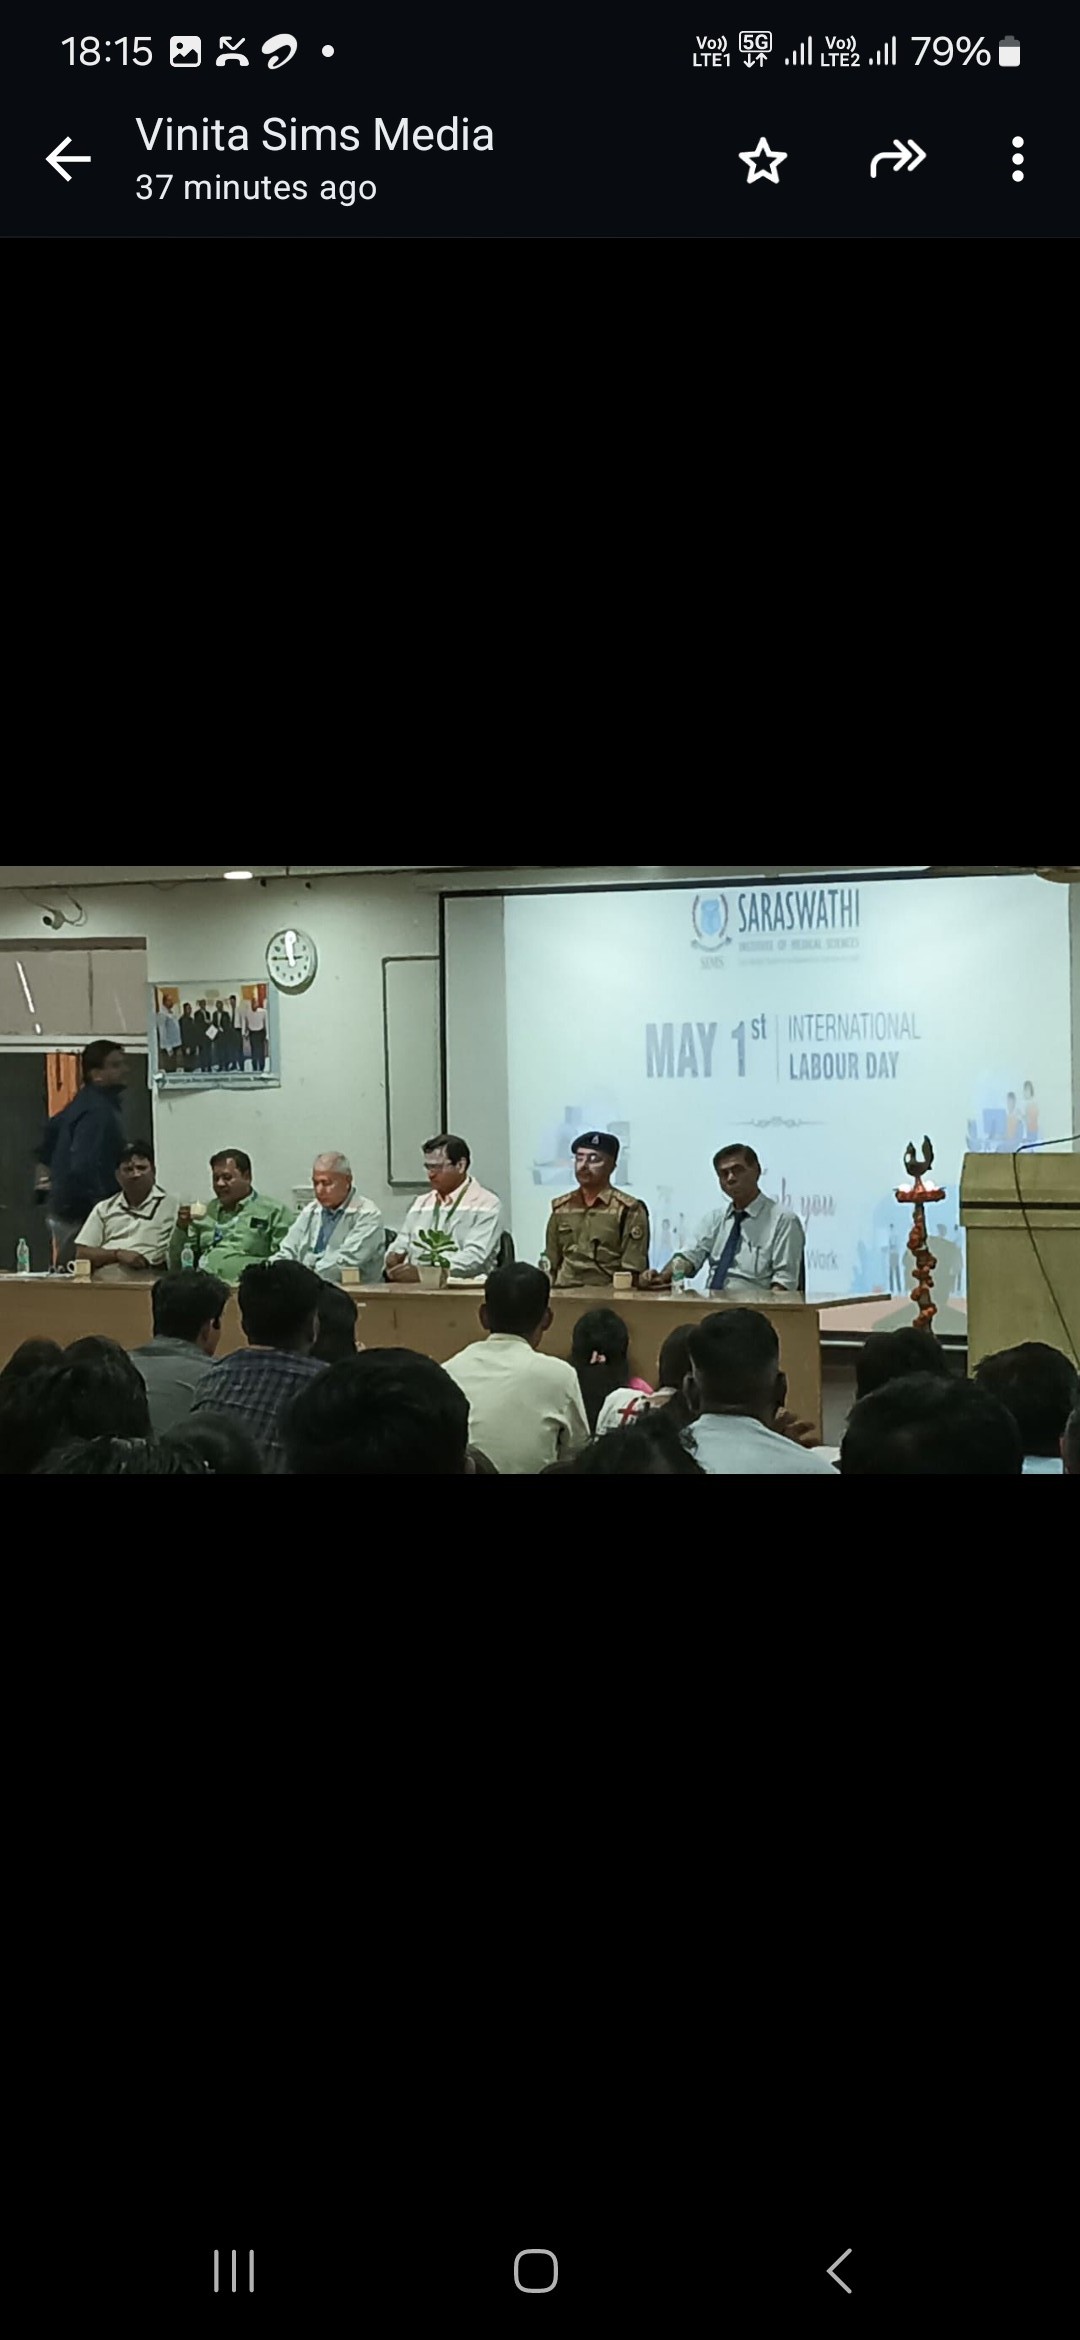 सरस्वती ग्रुप आॅफ इन्स्टीटयूशन में मनाया गया अंतरराष्ट्रीय श्रमिक दिवस